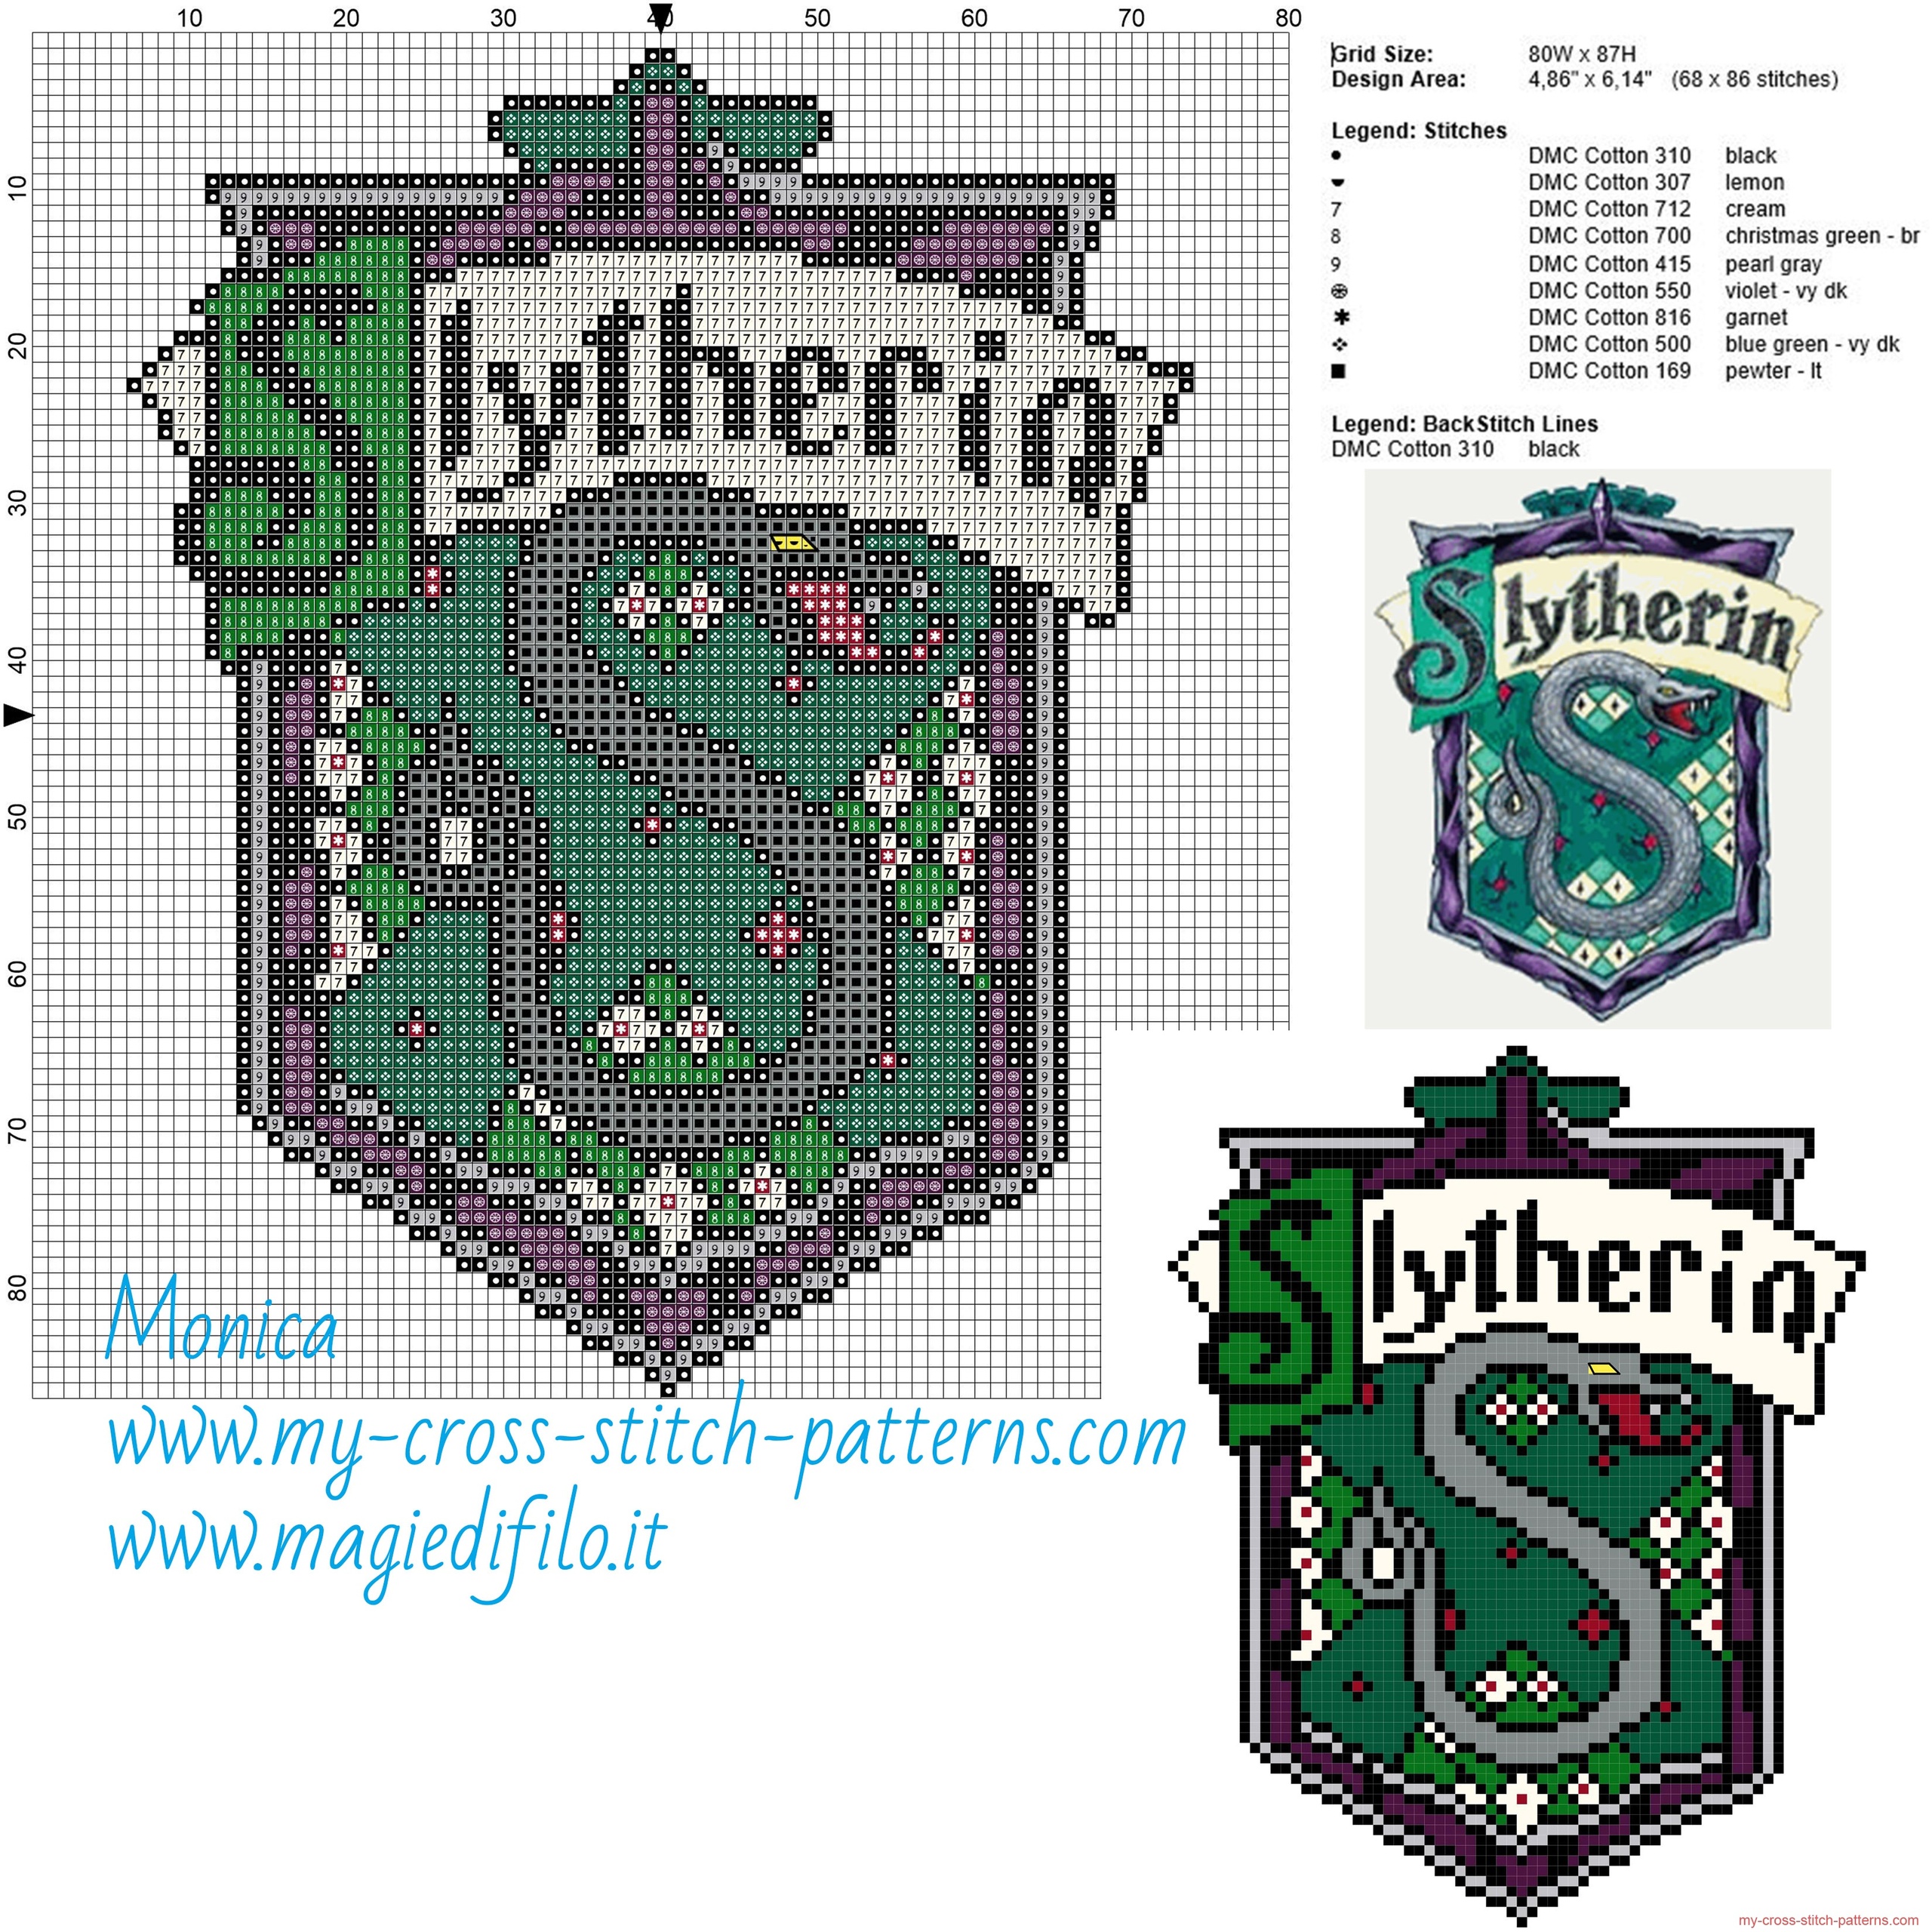 slytherin_cross_stitch_pattern_